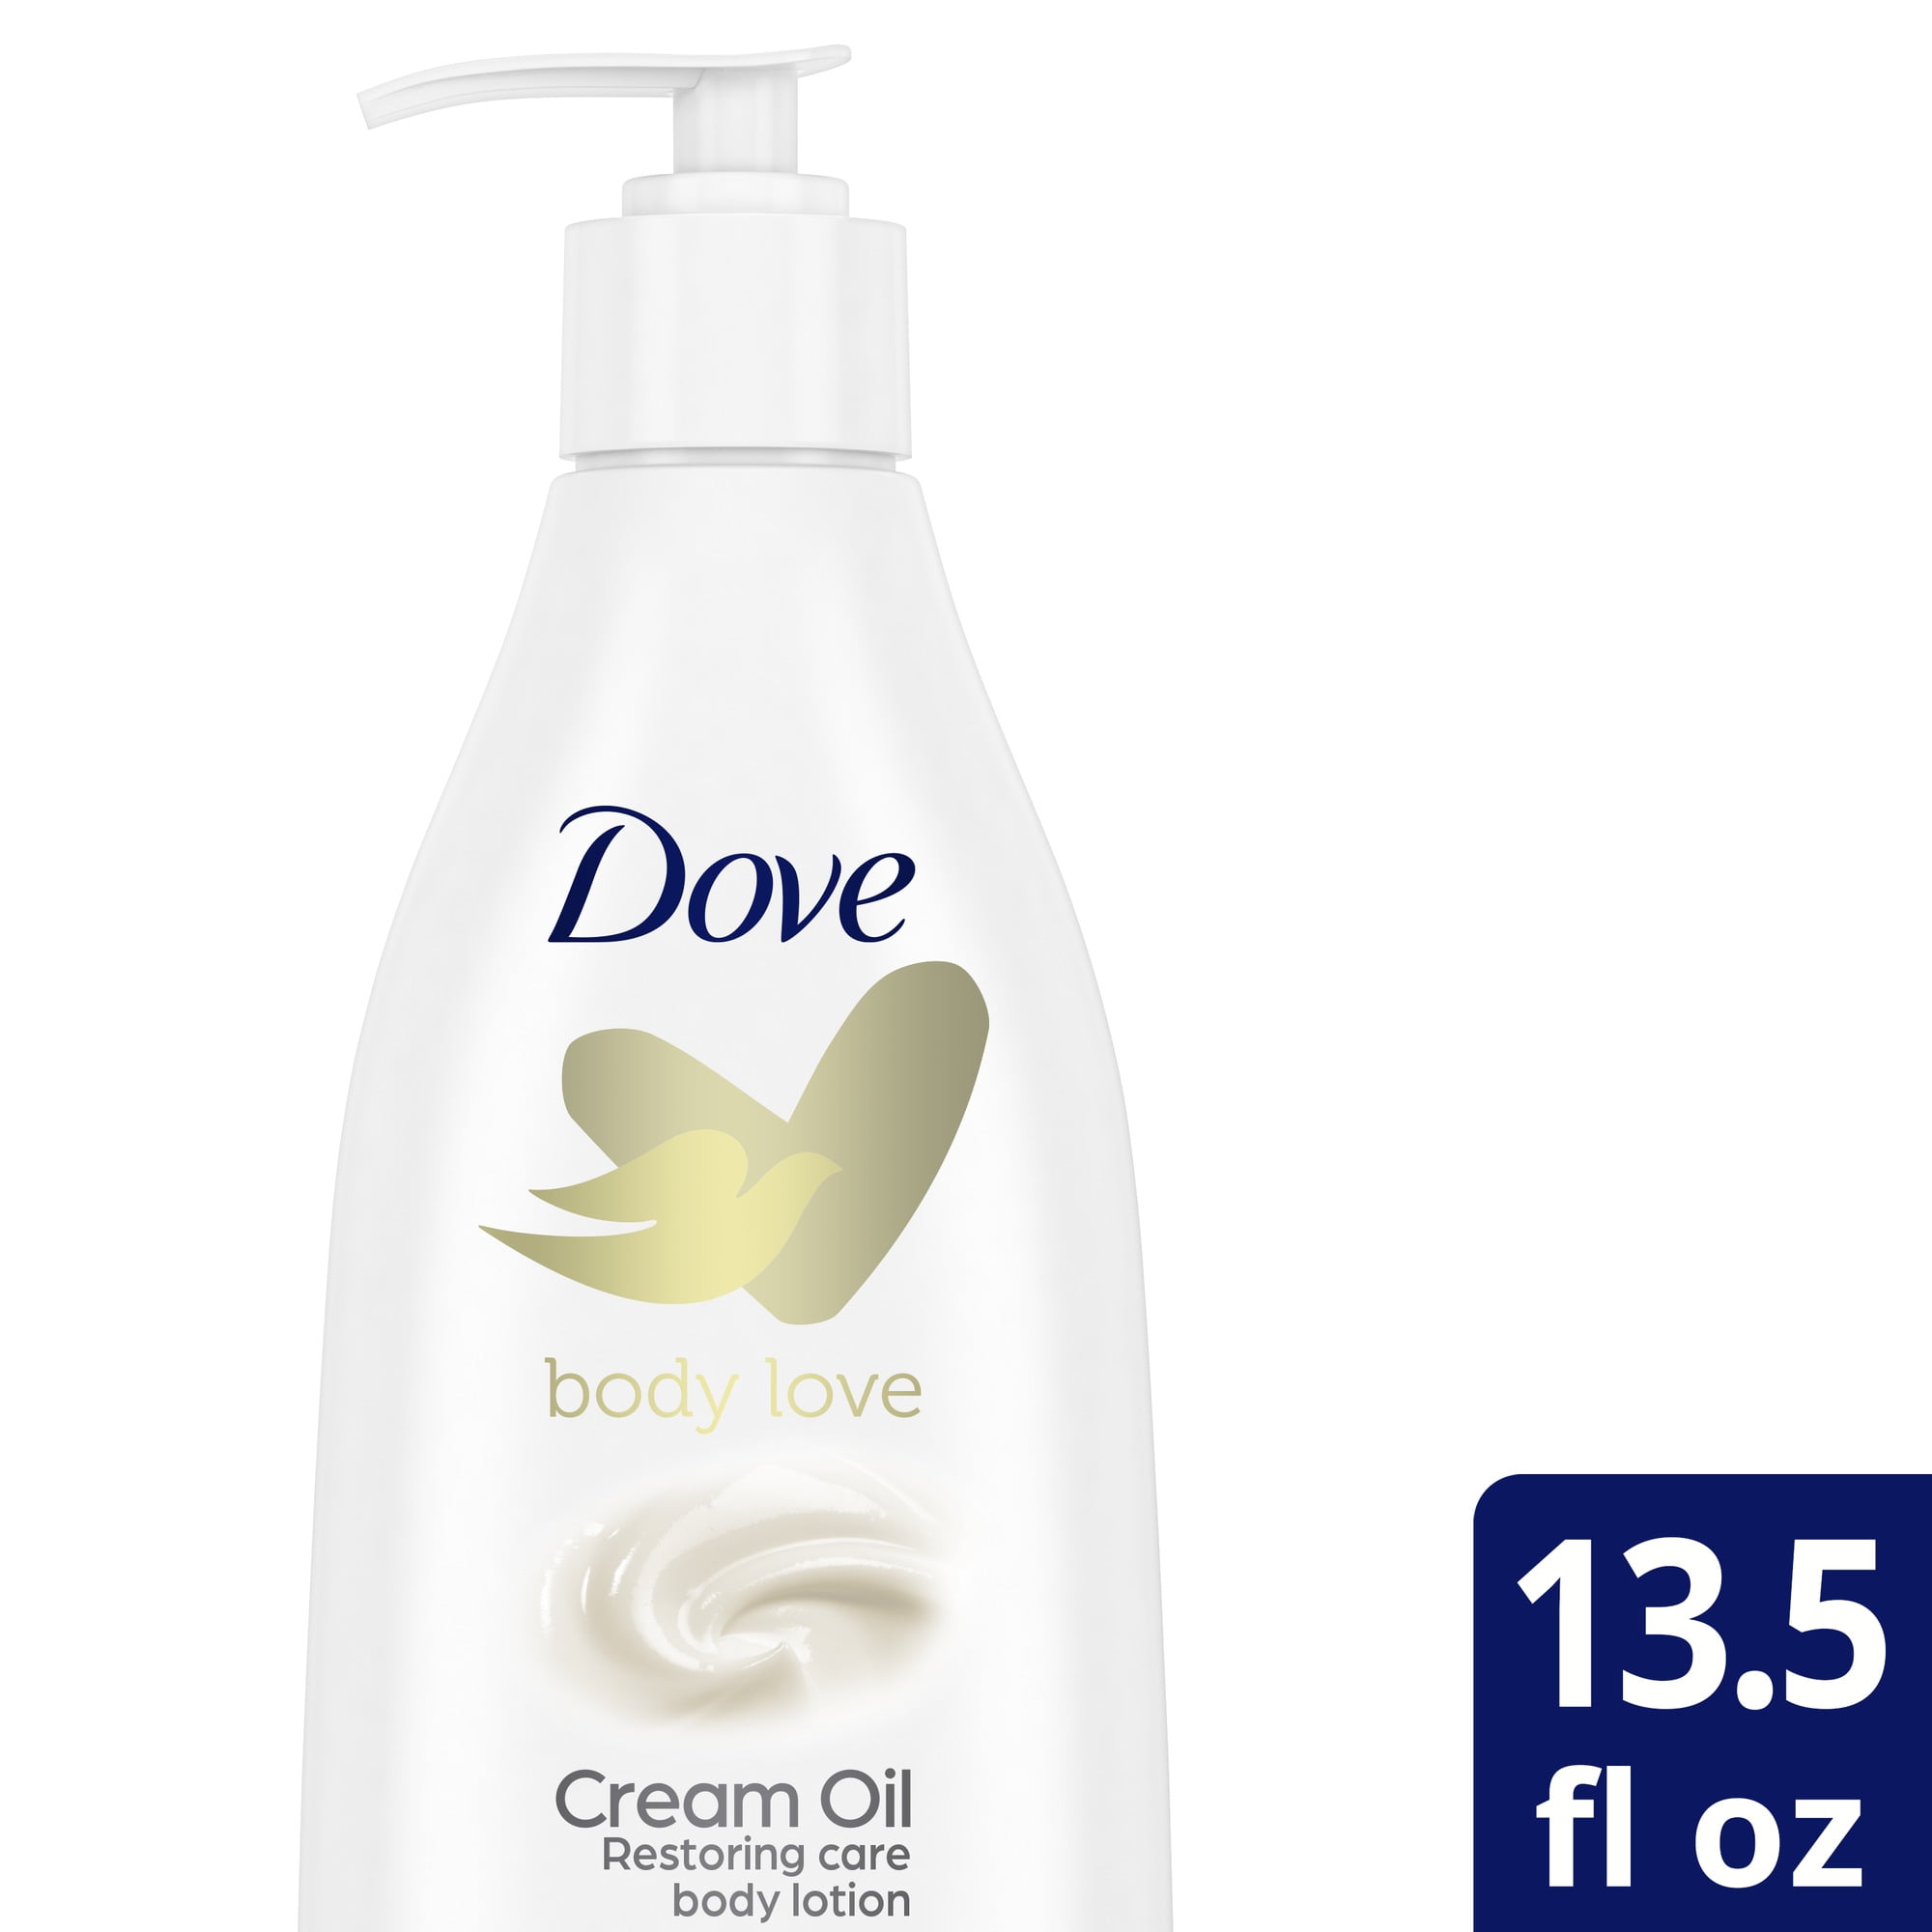 Dove Love Cream Oil Restoring Body Lotion 13.5 fl oz - Walmart.com